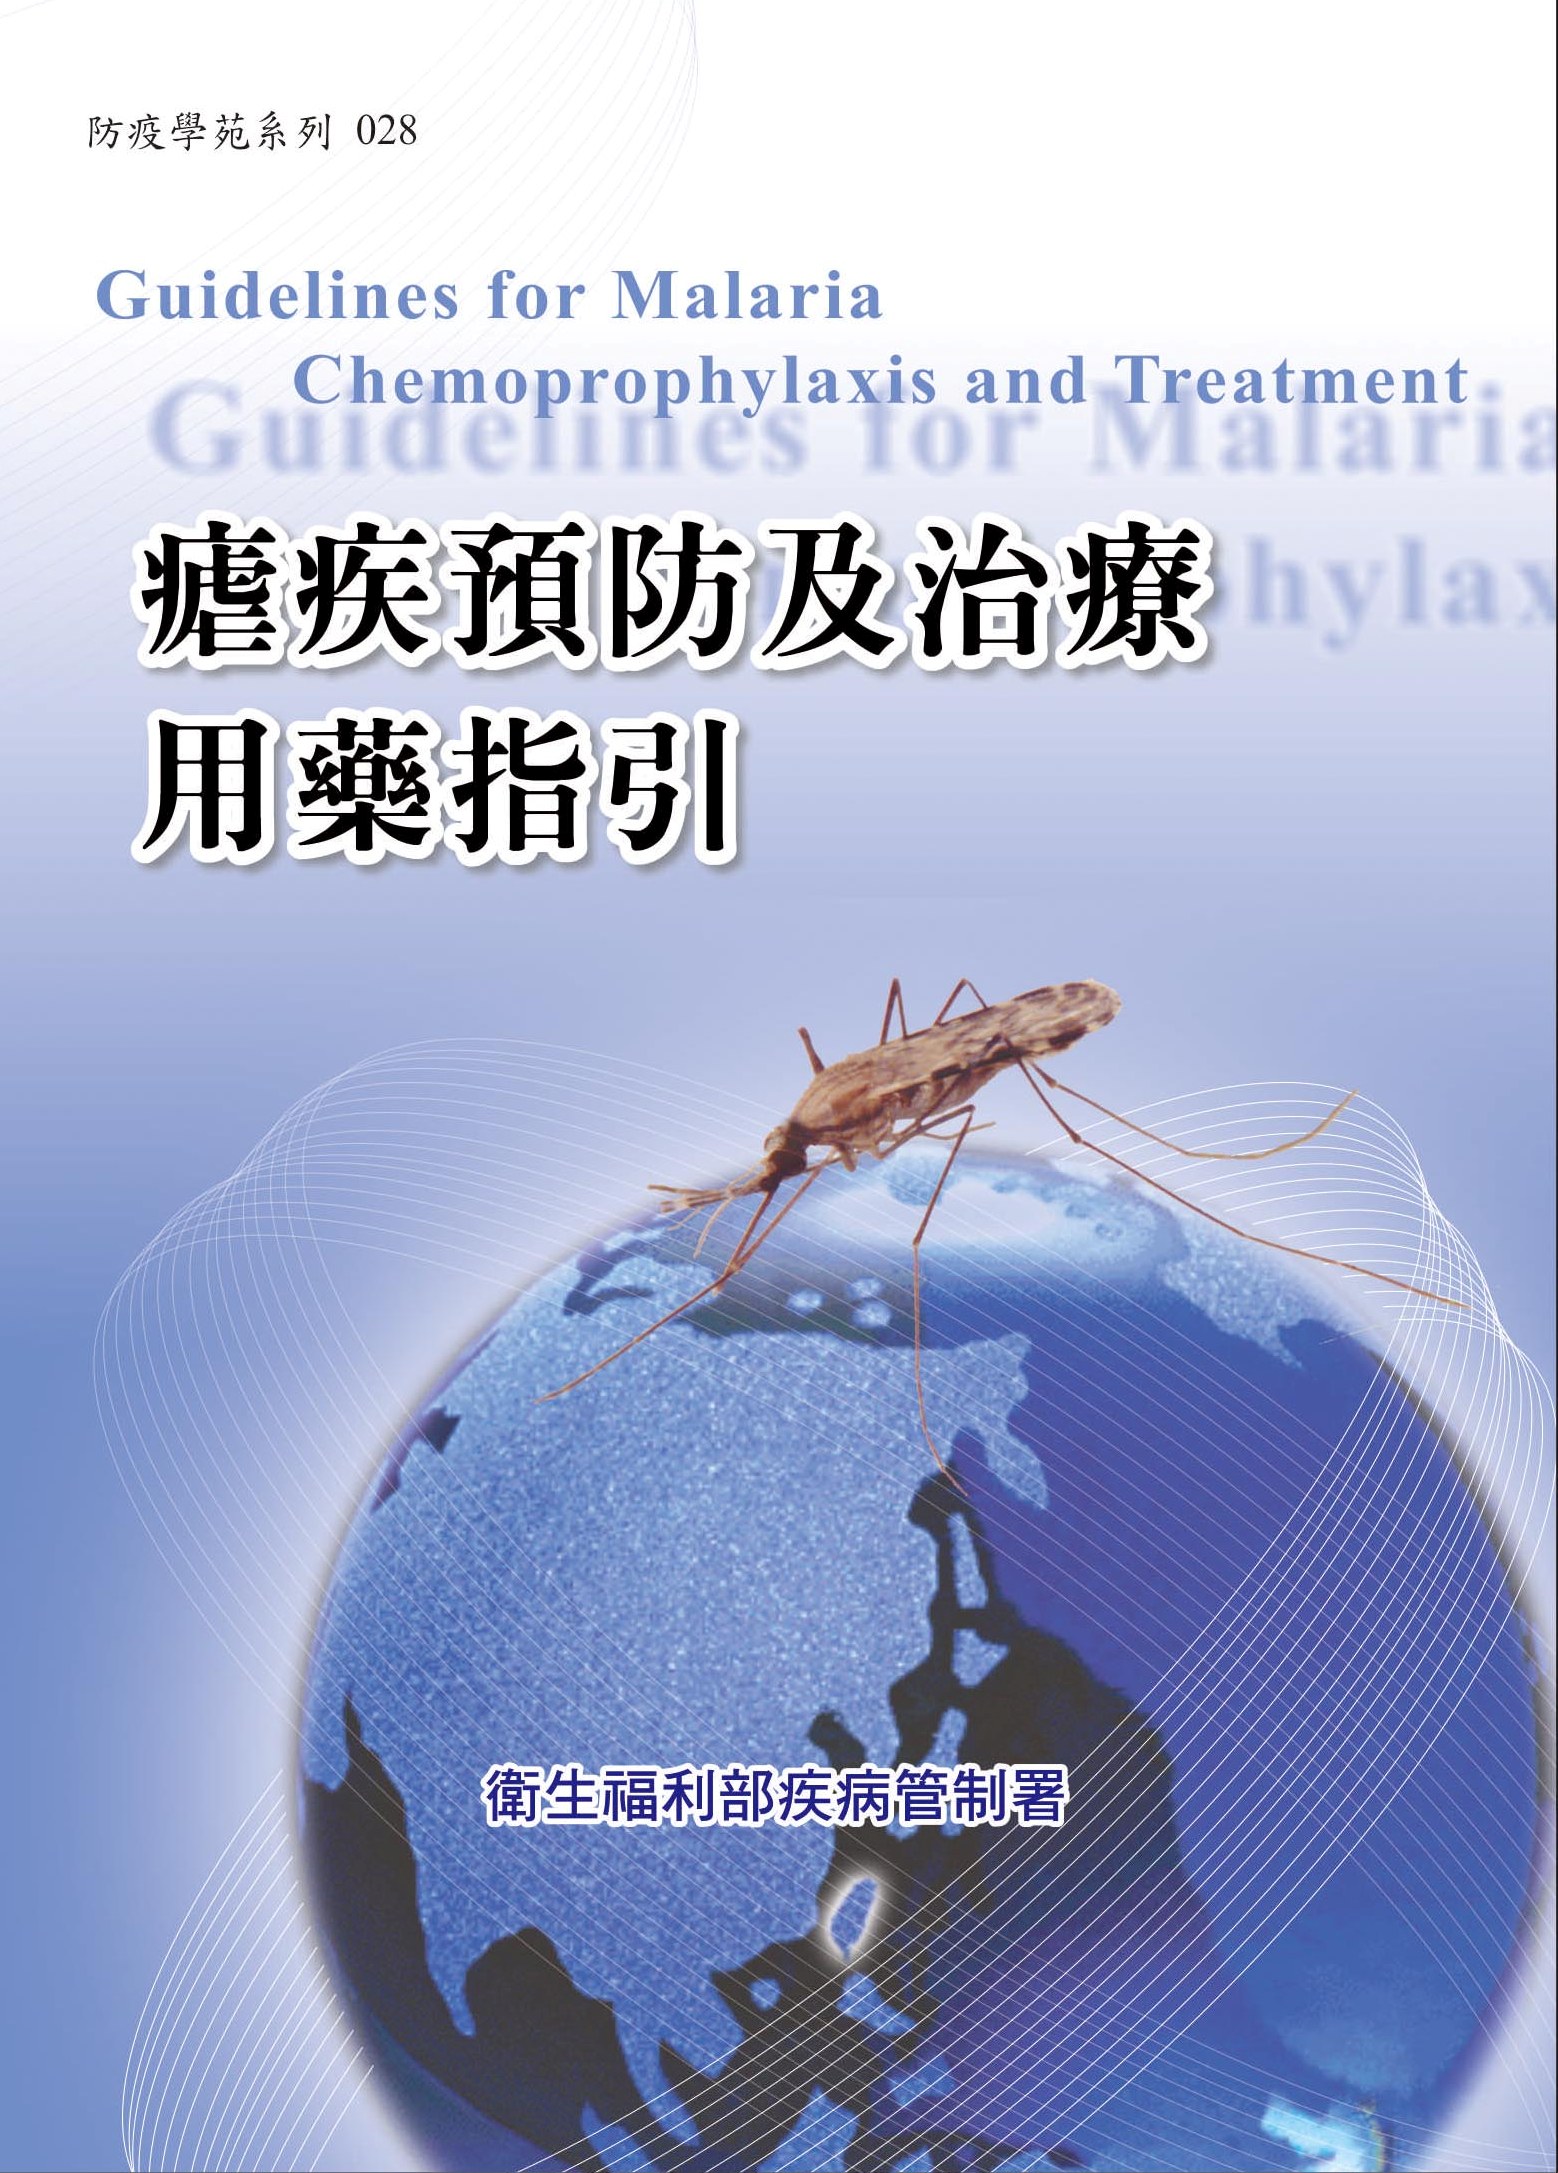 瘧疾預防及治療用藥指引(第四版)